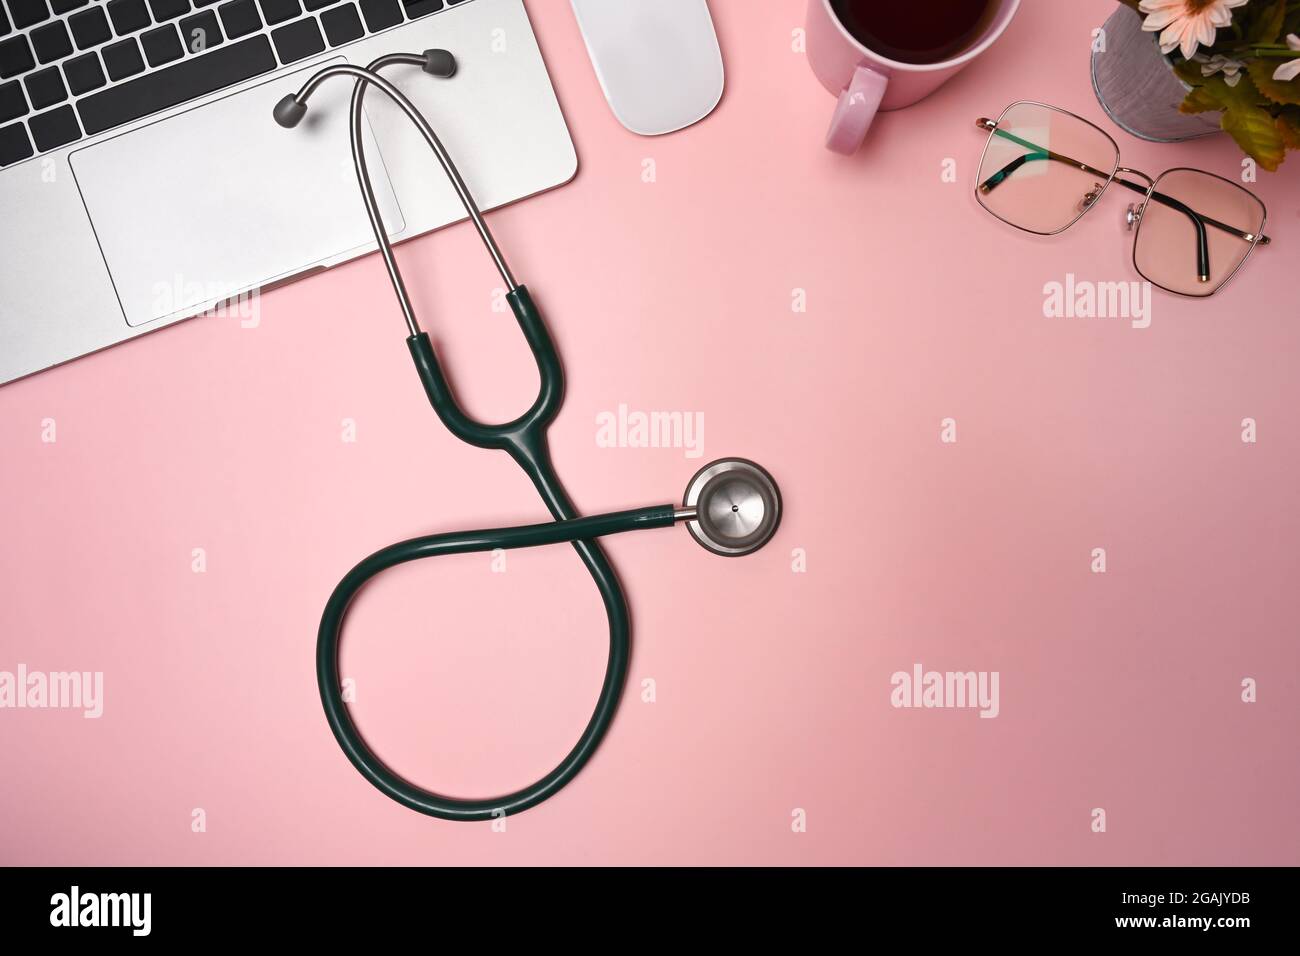 300 Free Stethoscope  Doctor Images  Pixabay